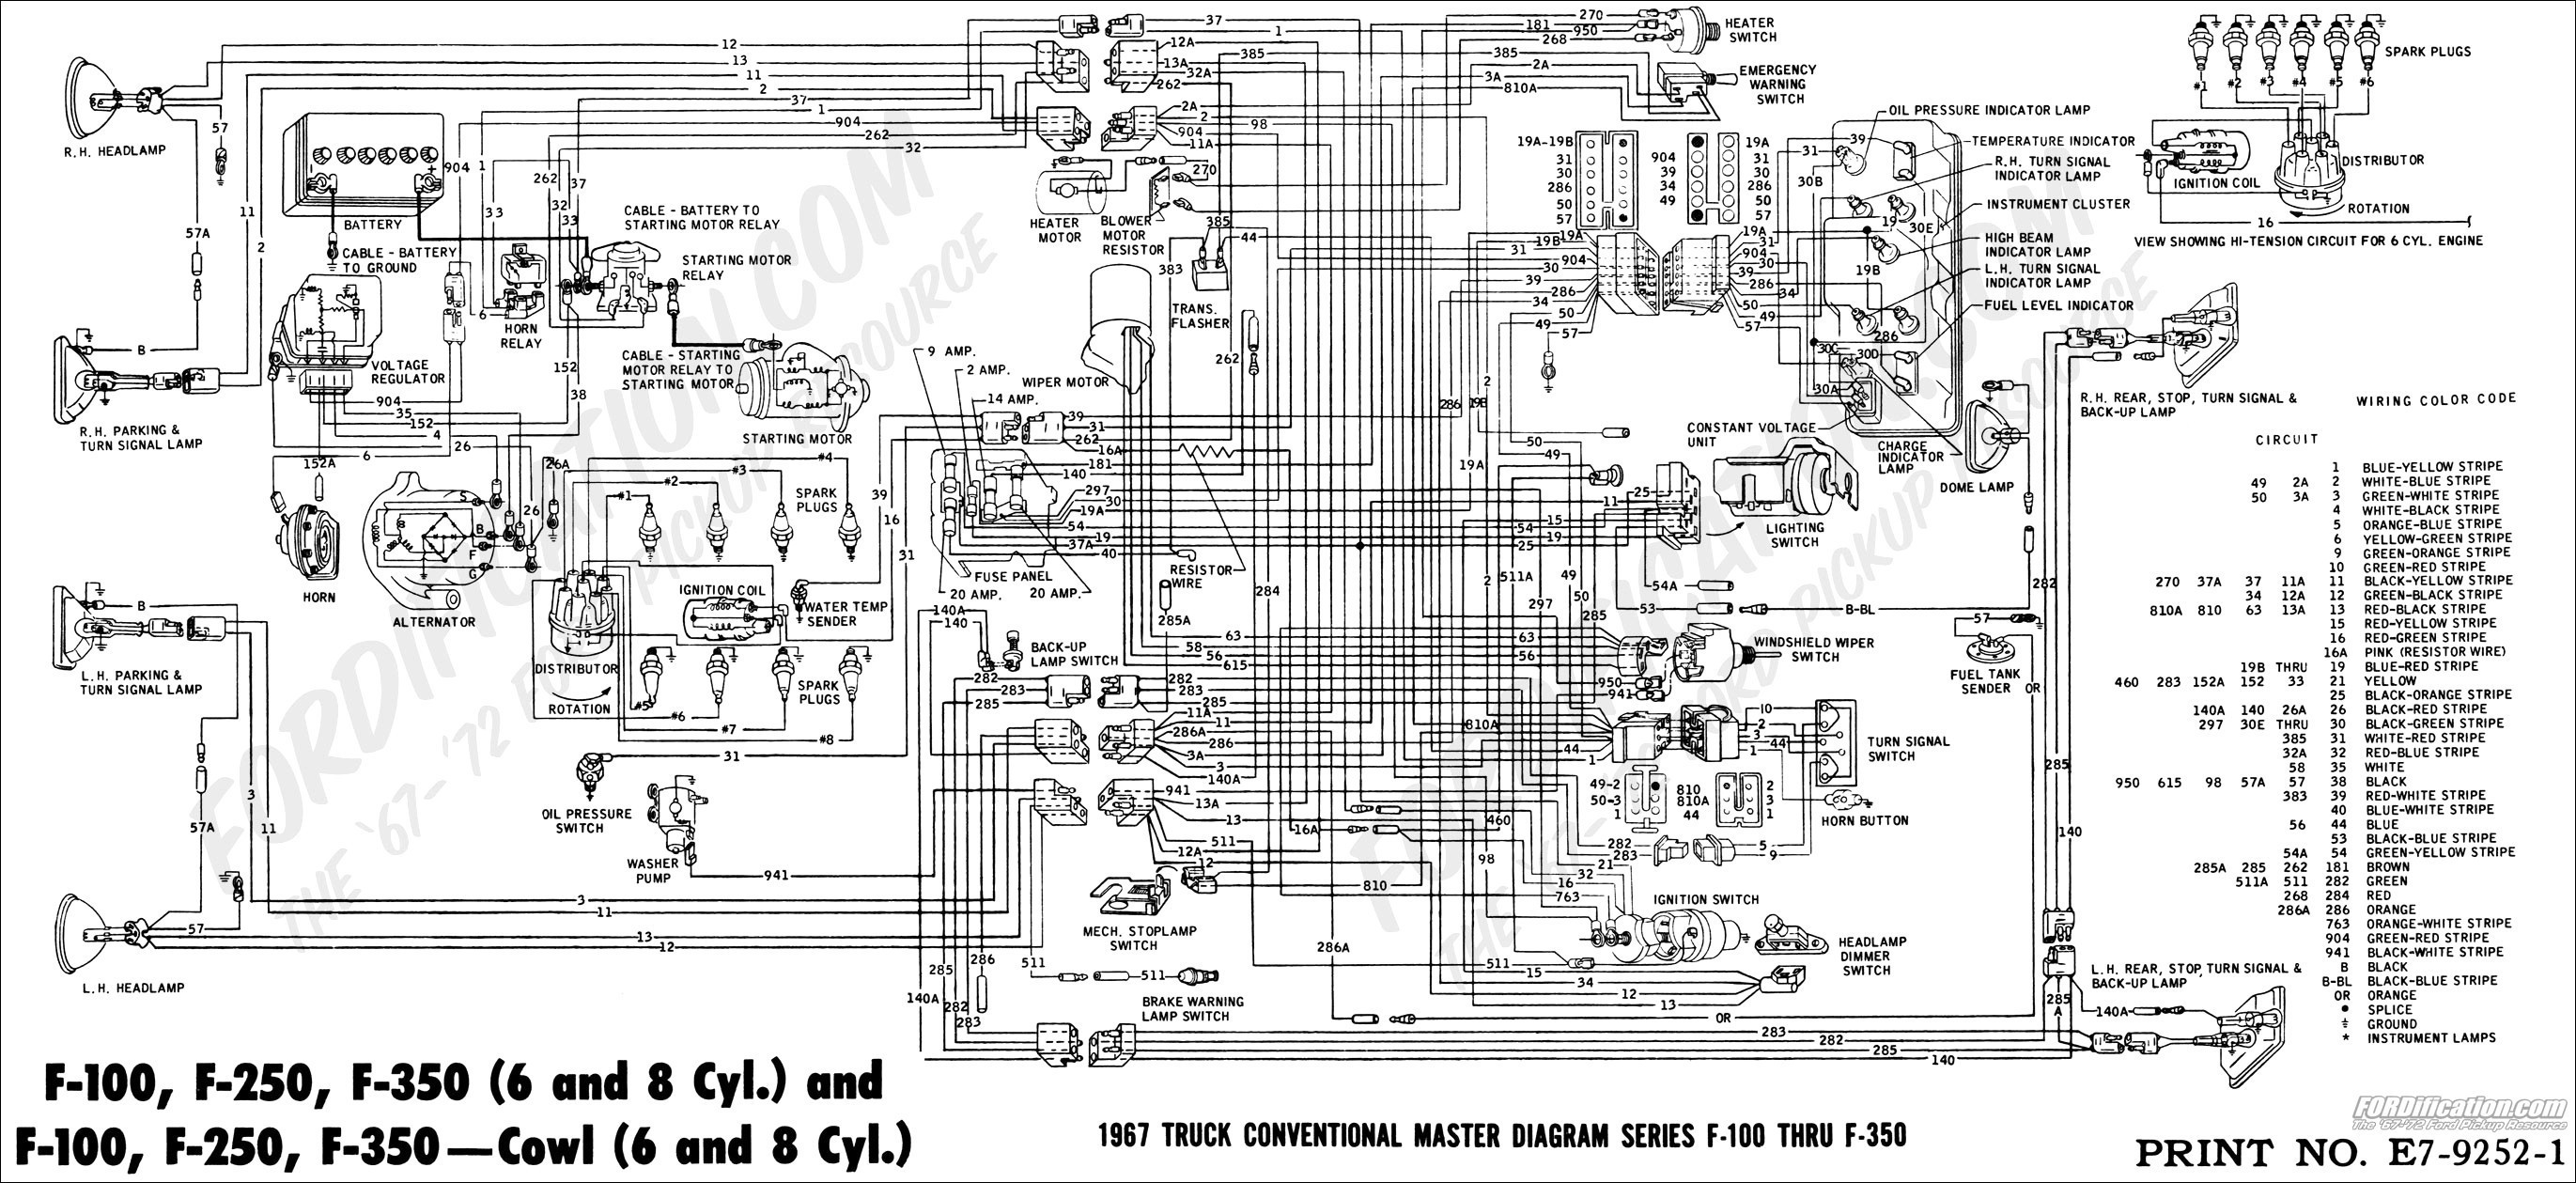 Ford F700 Brake System Diagram 1976 ford F700 Dash Wiring Wiring Diagram Home Of Ford F700 Brake System Diagram